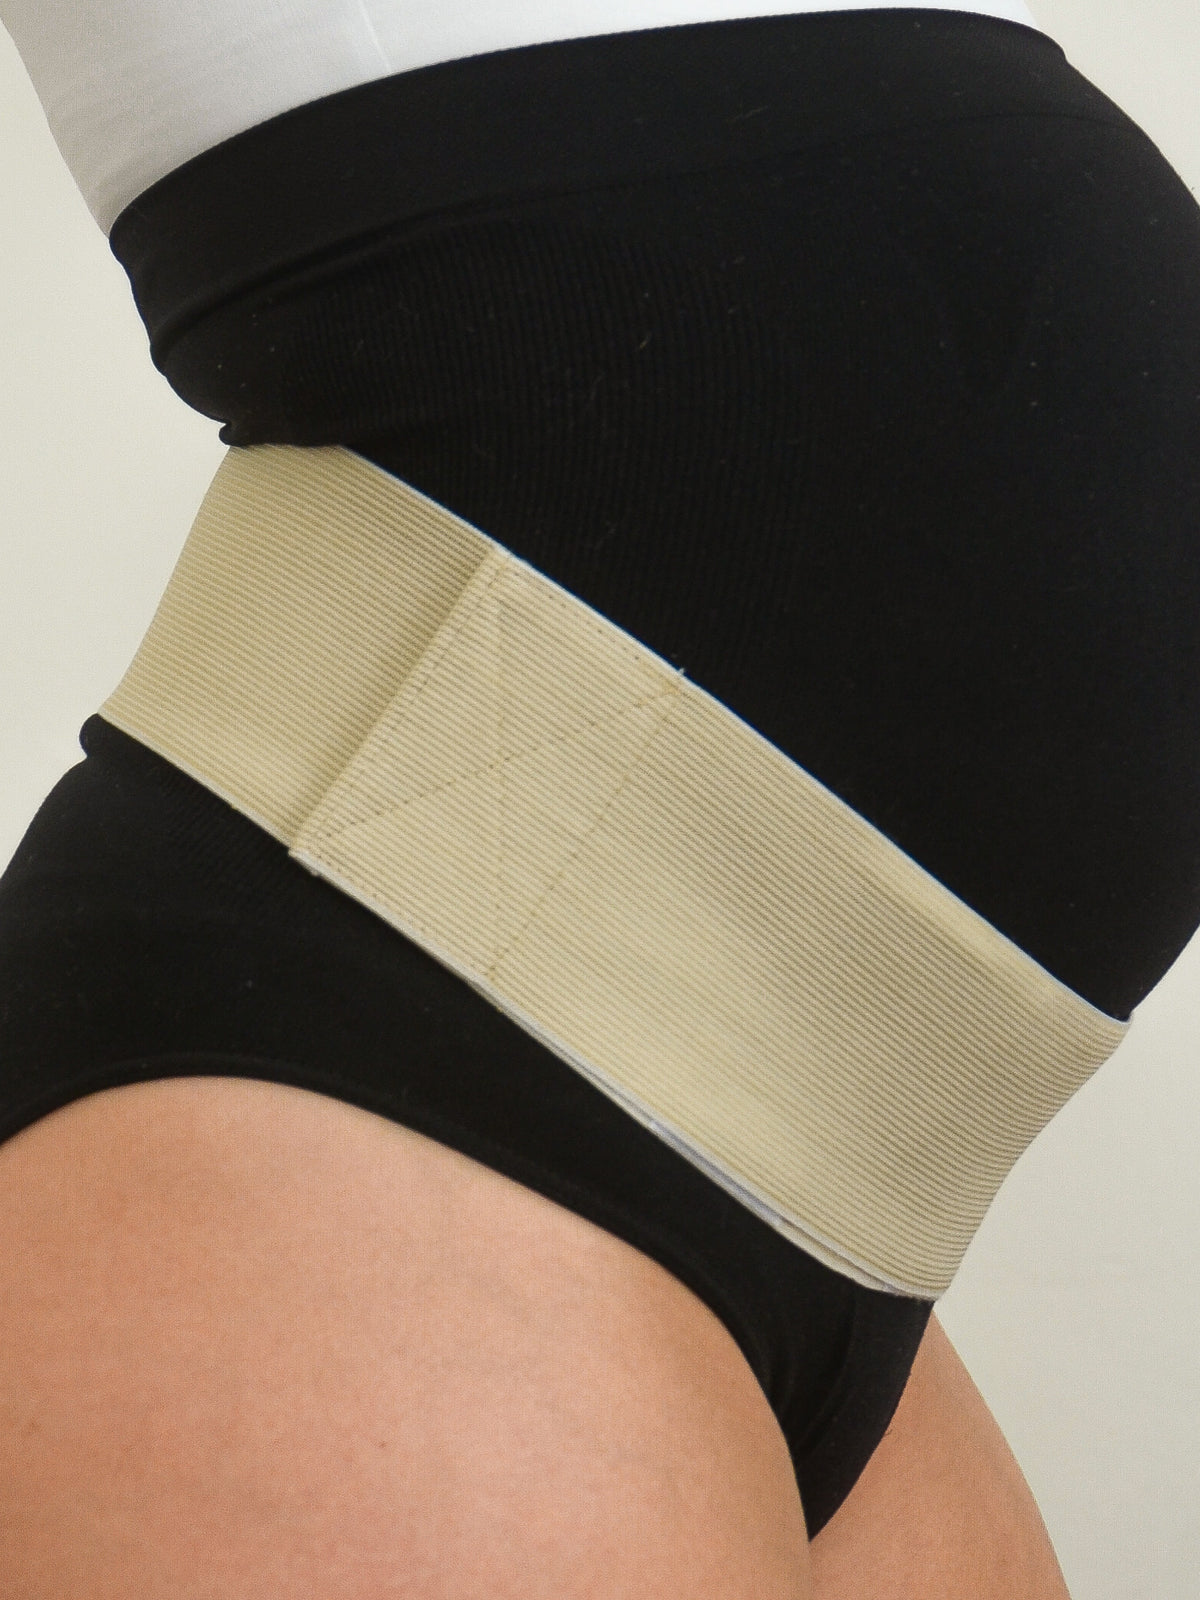 Faja Prenatal (soporte abdominal) Beige – Mitima